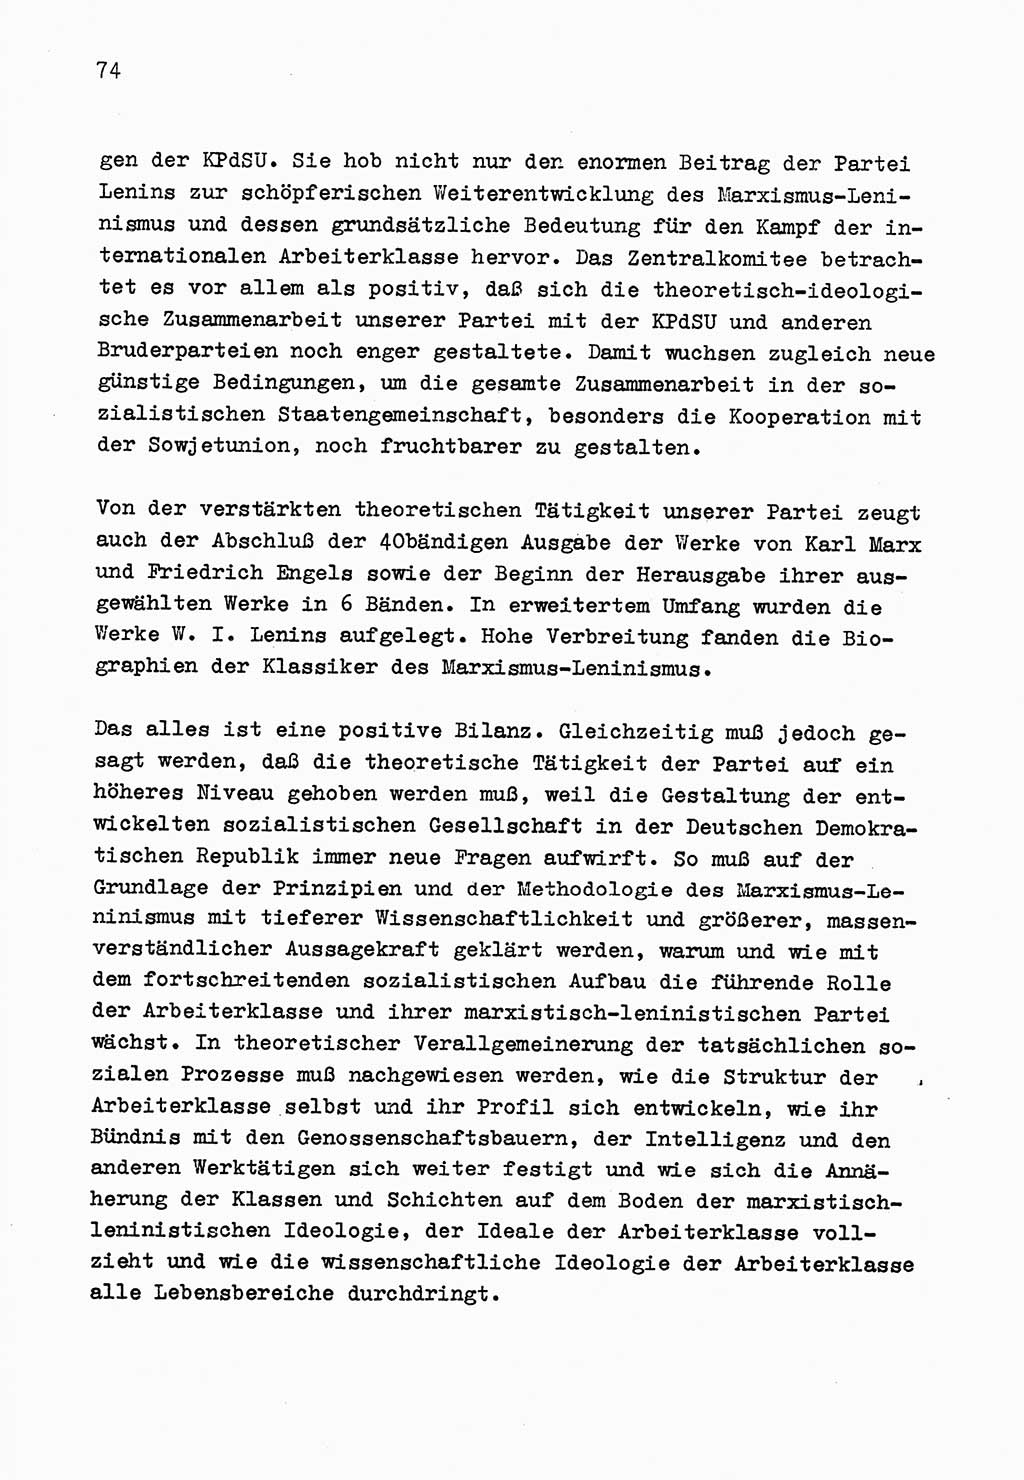 Zu Fragen der Parteiarbeit [Sozialistische Einheitspartei Deutschlands (SED) Deutsche Demokratische Republik (DDR)] 1979, Seite 74 (Fr. PA SED DDR 1979, S. 74)